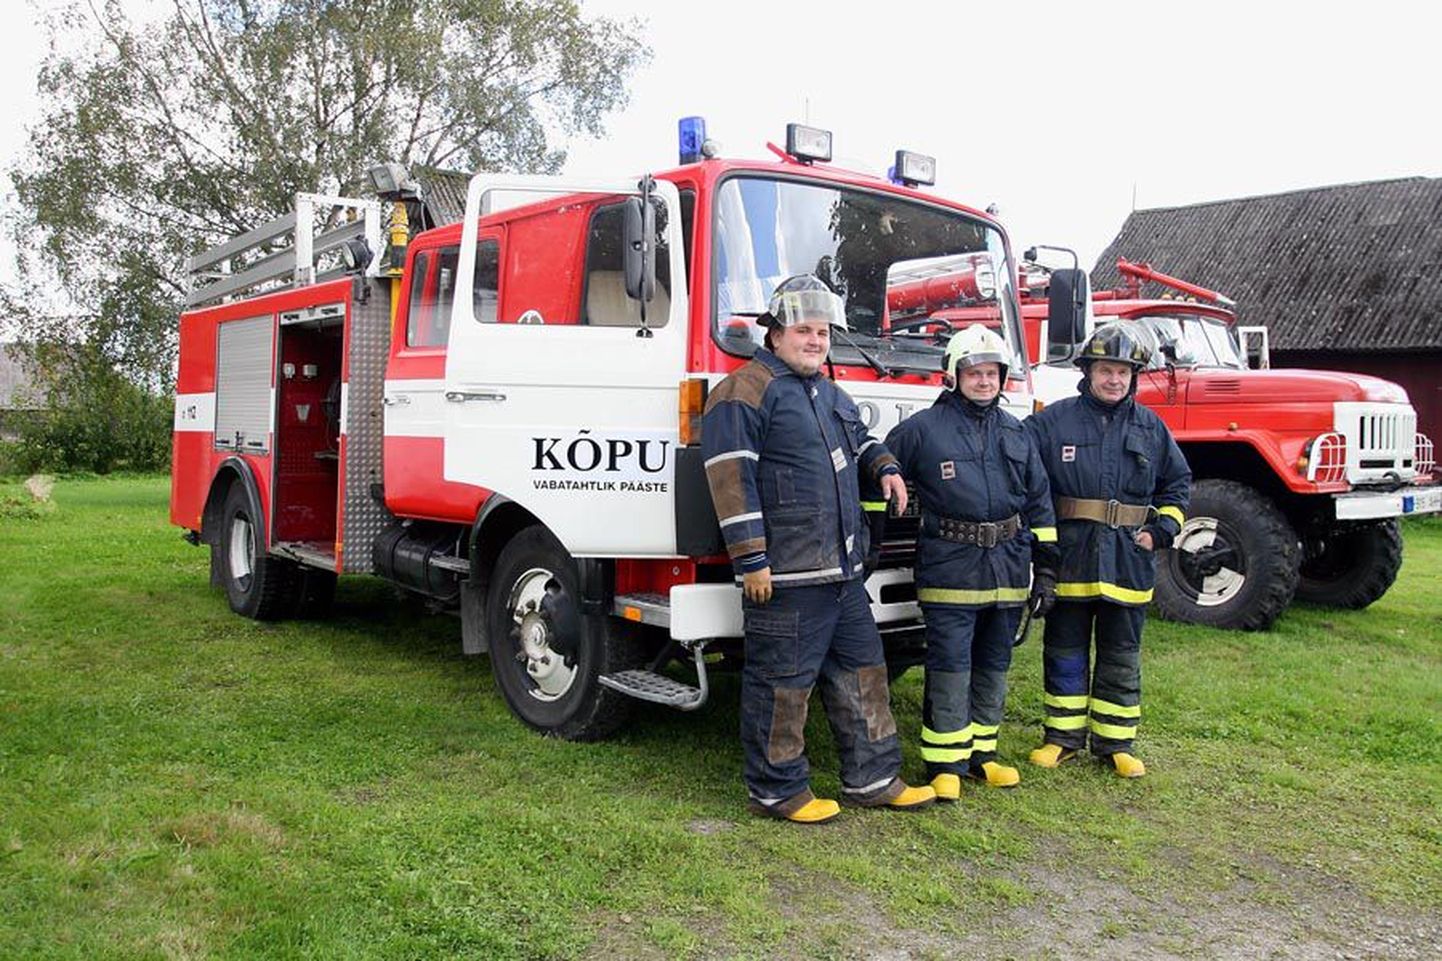 Kõpu tuletõrjeseltsi vabatahtlikud (vasakult) Martin Klamp ja Timo Vreimann ning komando pealik Tõnu Vreimann said möödunud nädalal endale kolmanda tuletõrjeauto. Volvo (vasakul) pärineb 1983. aastast ja on seega vanem kui senine, 1990. aastal registreeritud päästeauto.